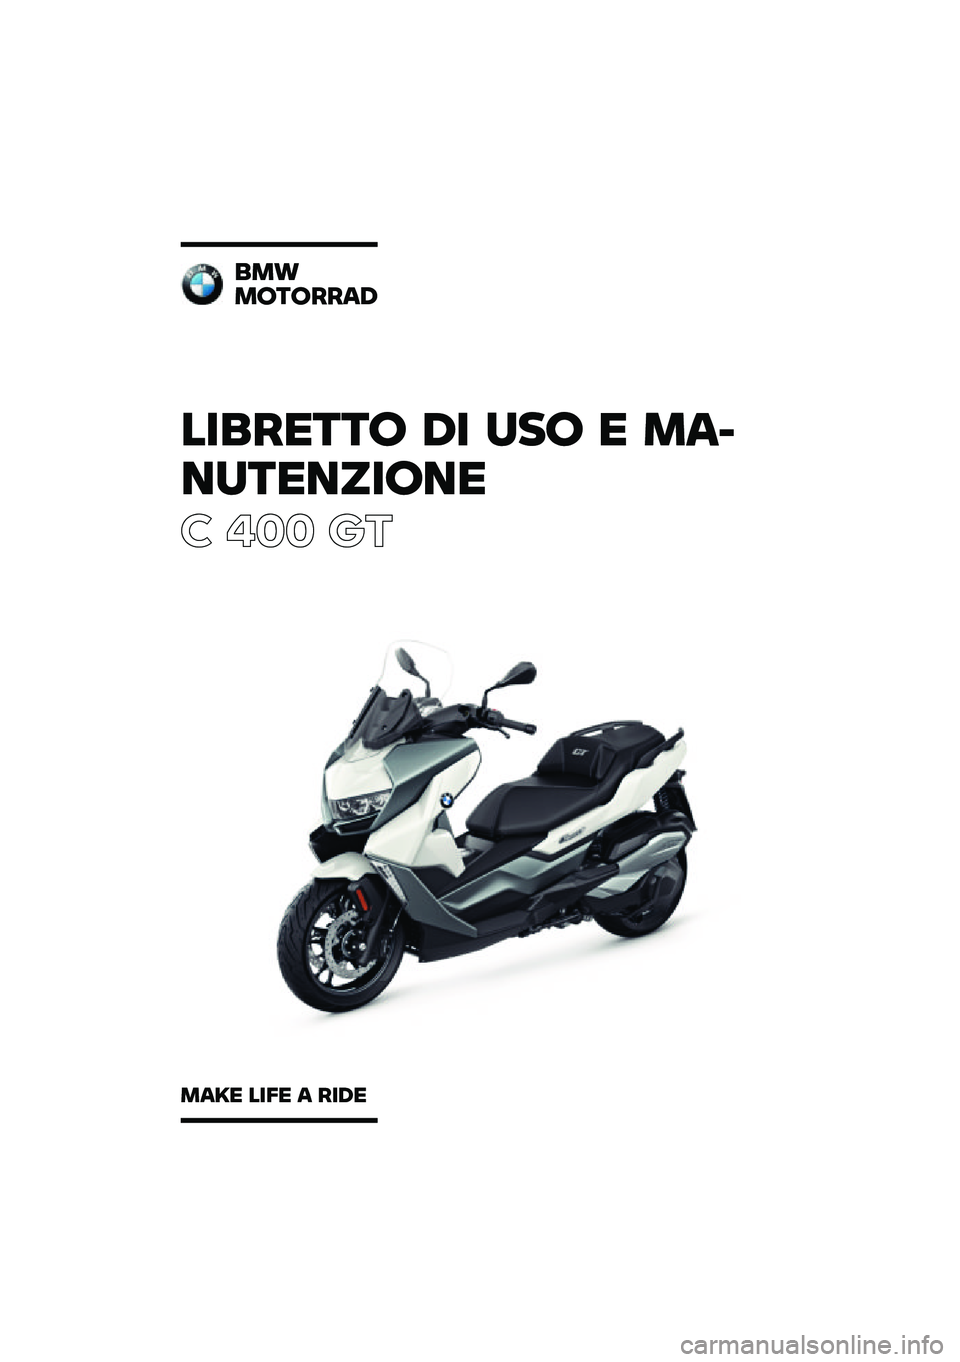 BMW MOTORRAD C 400 GT 2020  Libretto di uso e manutenzione (in Italian) ��������\b �	� �
��\b � �\f�
�
��
������\b��
� ��� ��\b
��\f�
�\f�\b��\b���
�	
�\f�
�� ���� �
 ���	� 